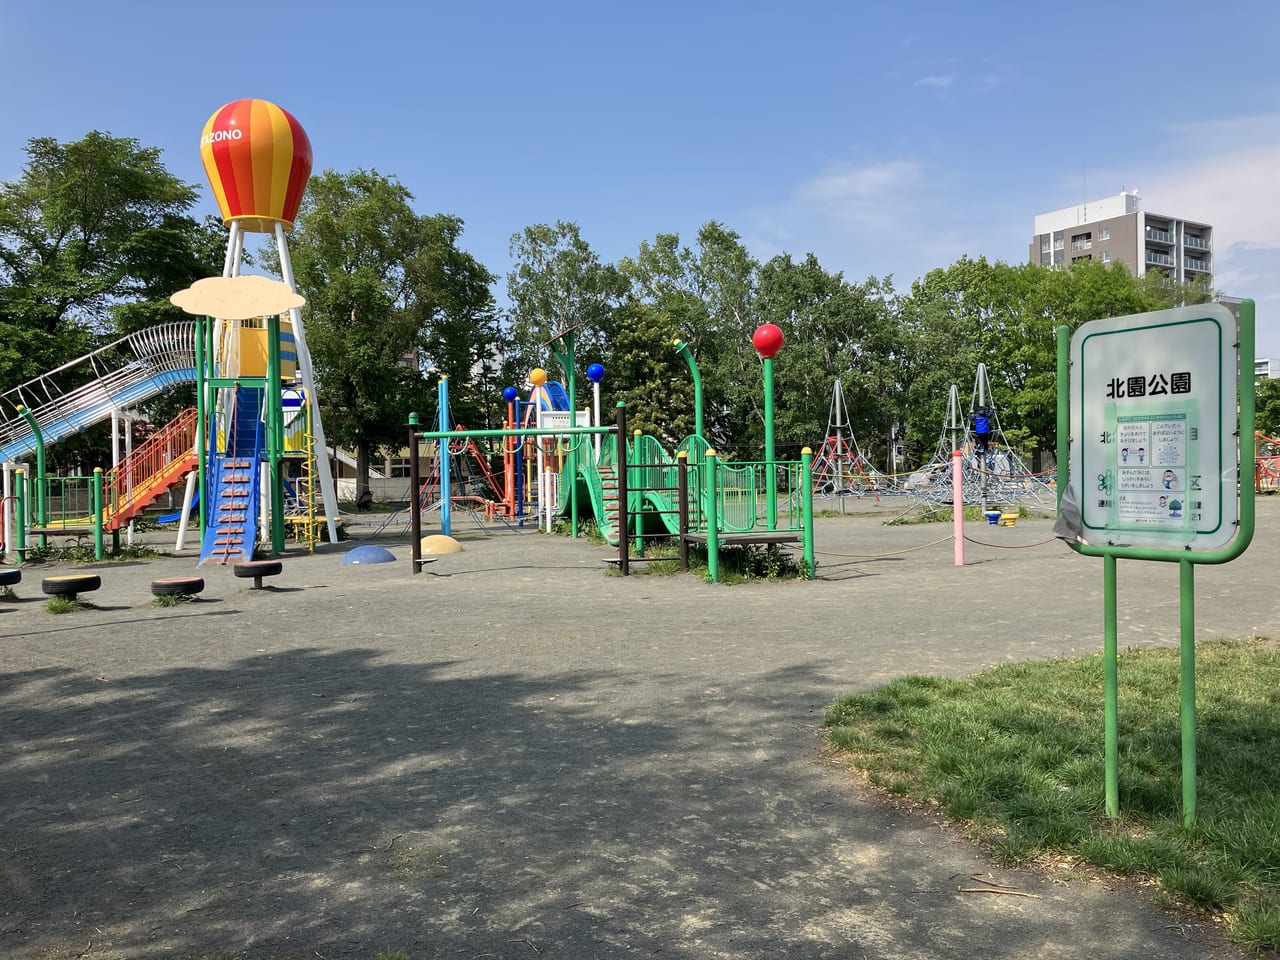 元町駅からすぐに北園公園をみつけたよ。ターザンロープや長い滑り台も設置してあります！幼児でも遊べるかわいいお砂場やブランコも☆